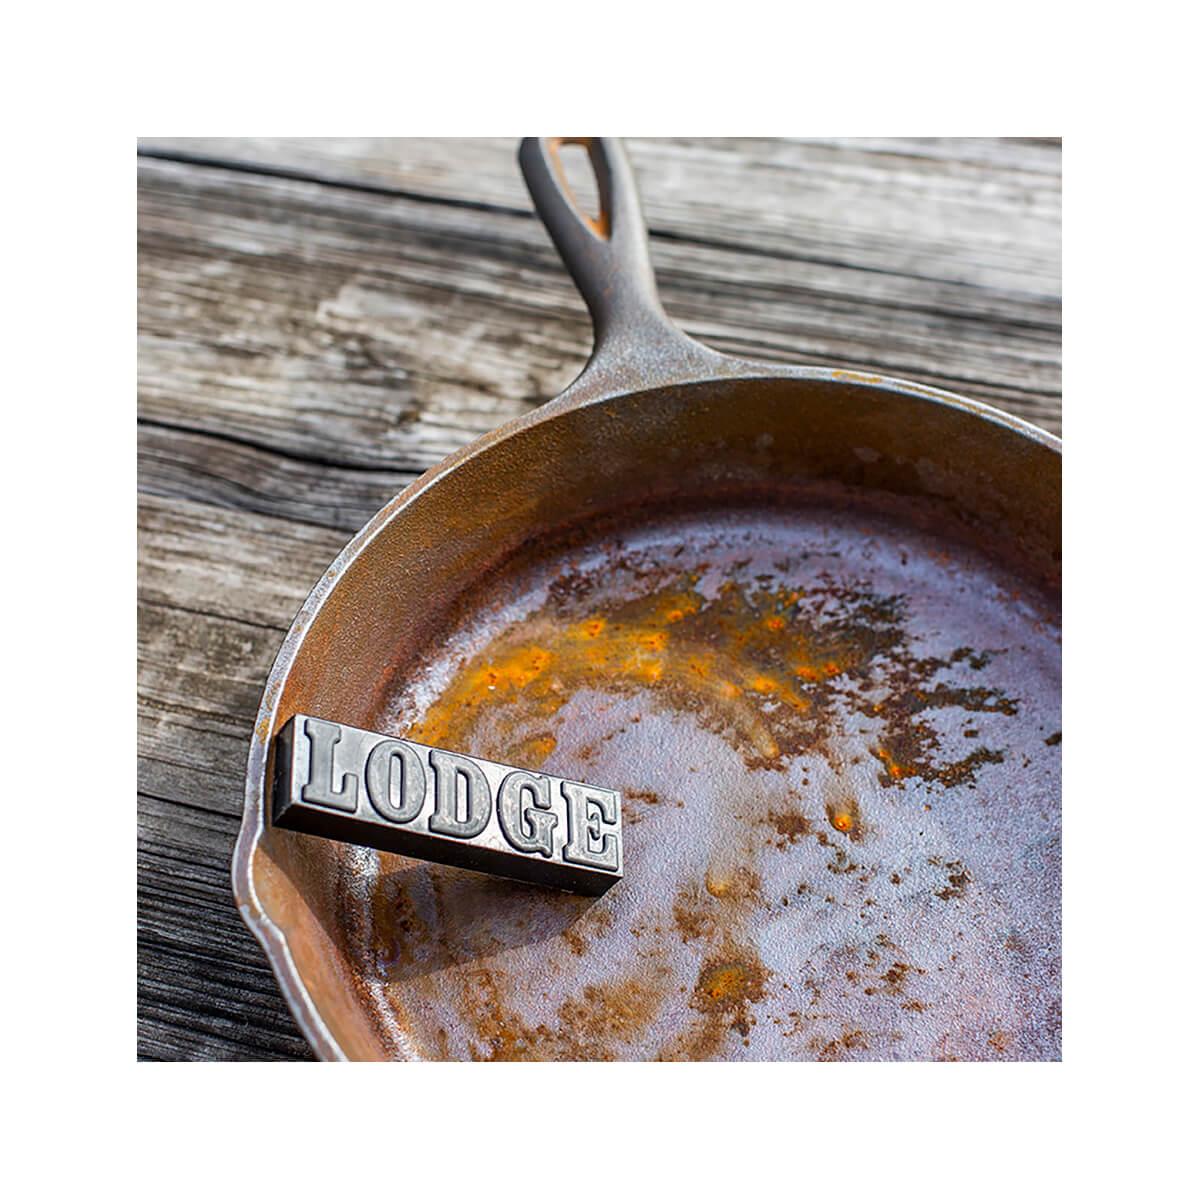 Lodge Cast Iron Cookware Rust Eraser - 1/2